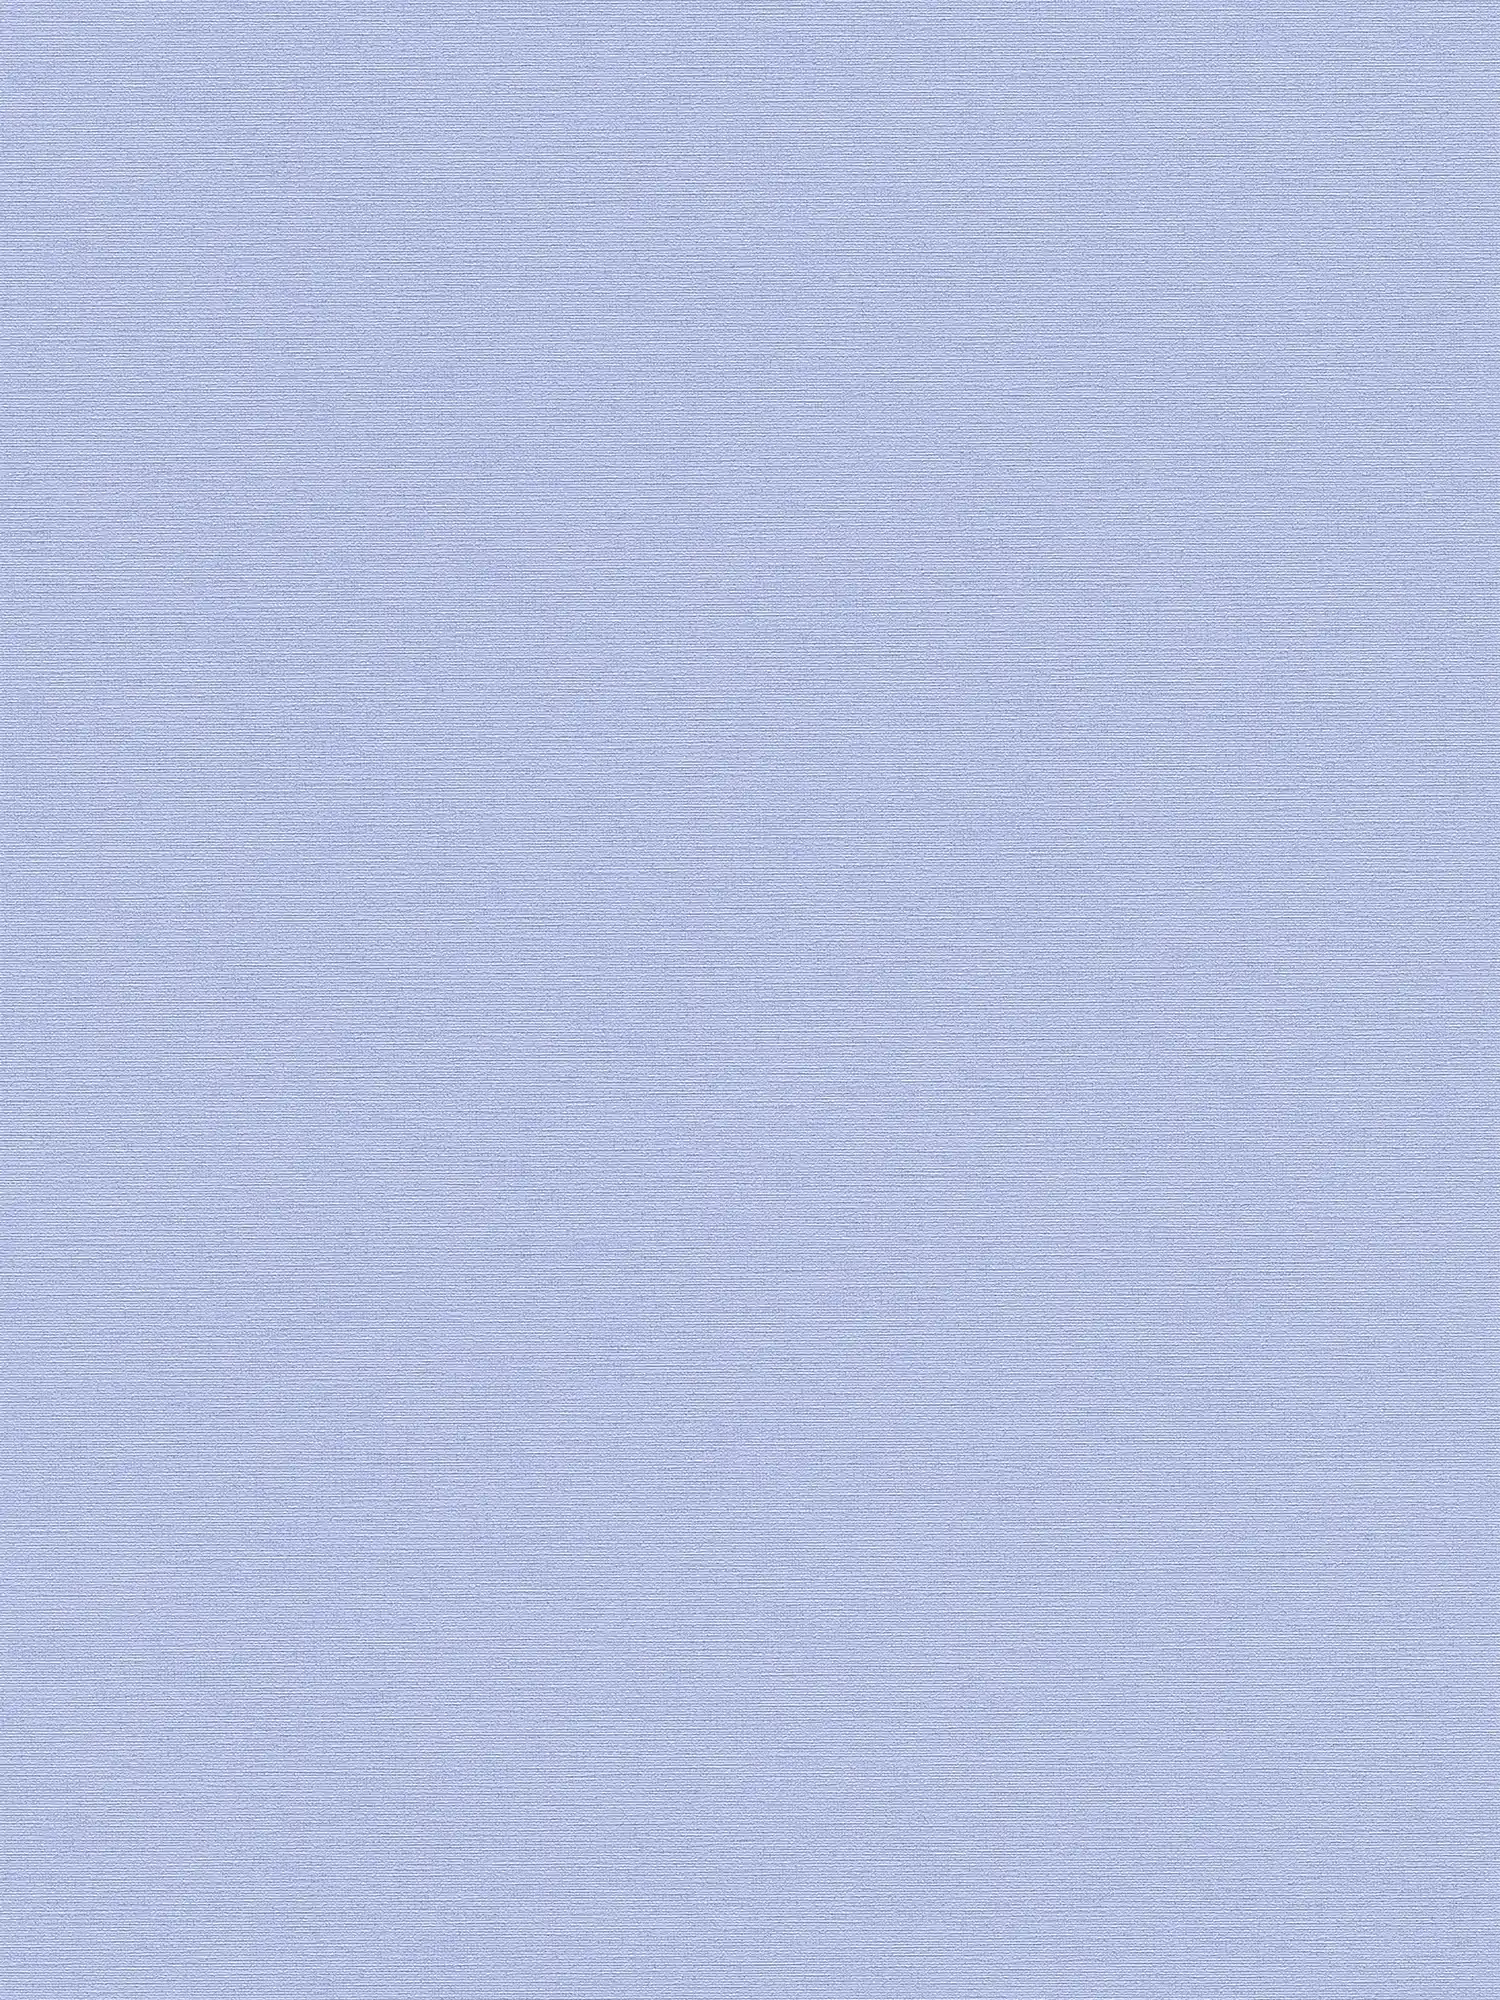 Papel pintado liso no tejido con aspecto de lino - azul
